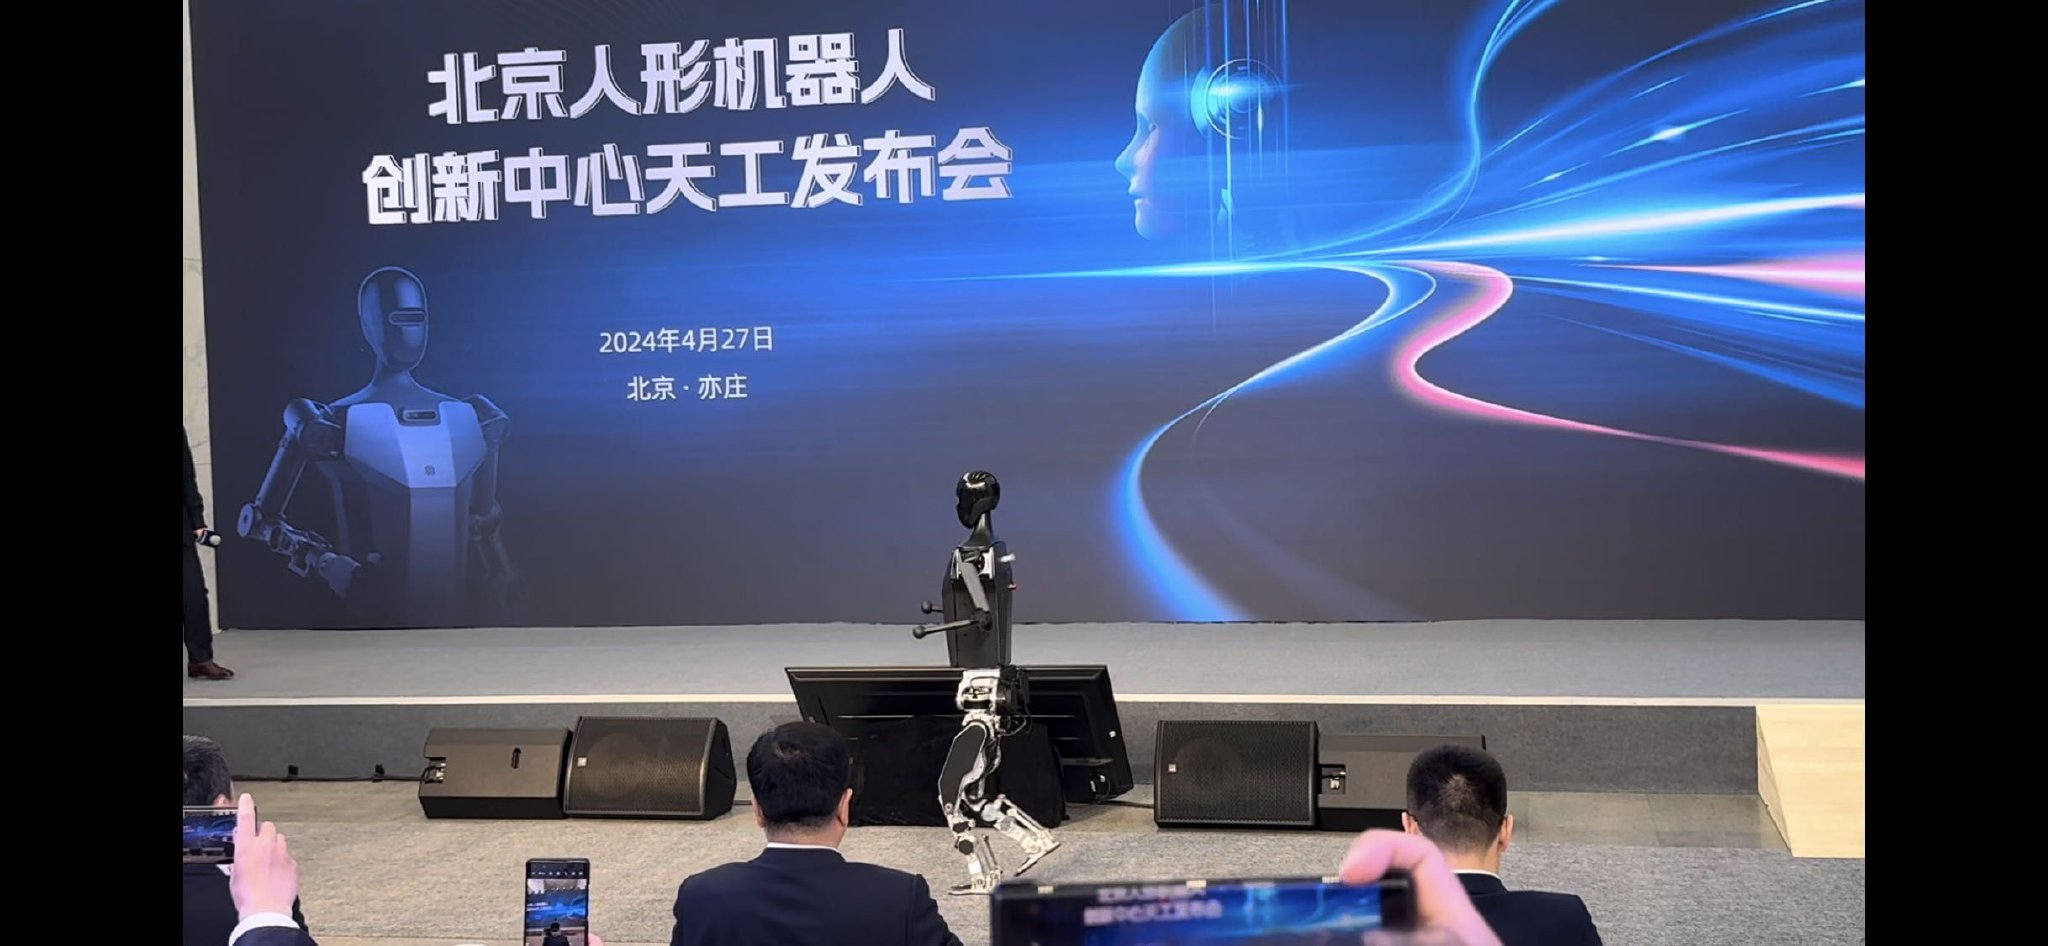 人形机器人母平台“天工”在京“跑步”亮相。新华社记者郭宇靖摄